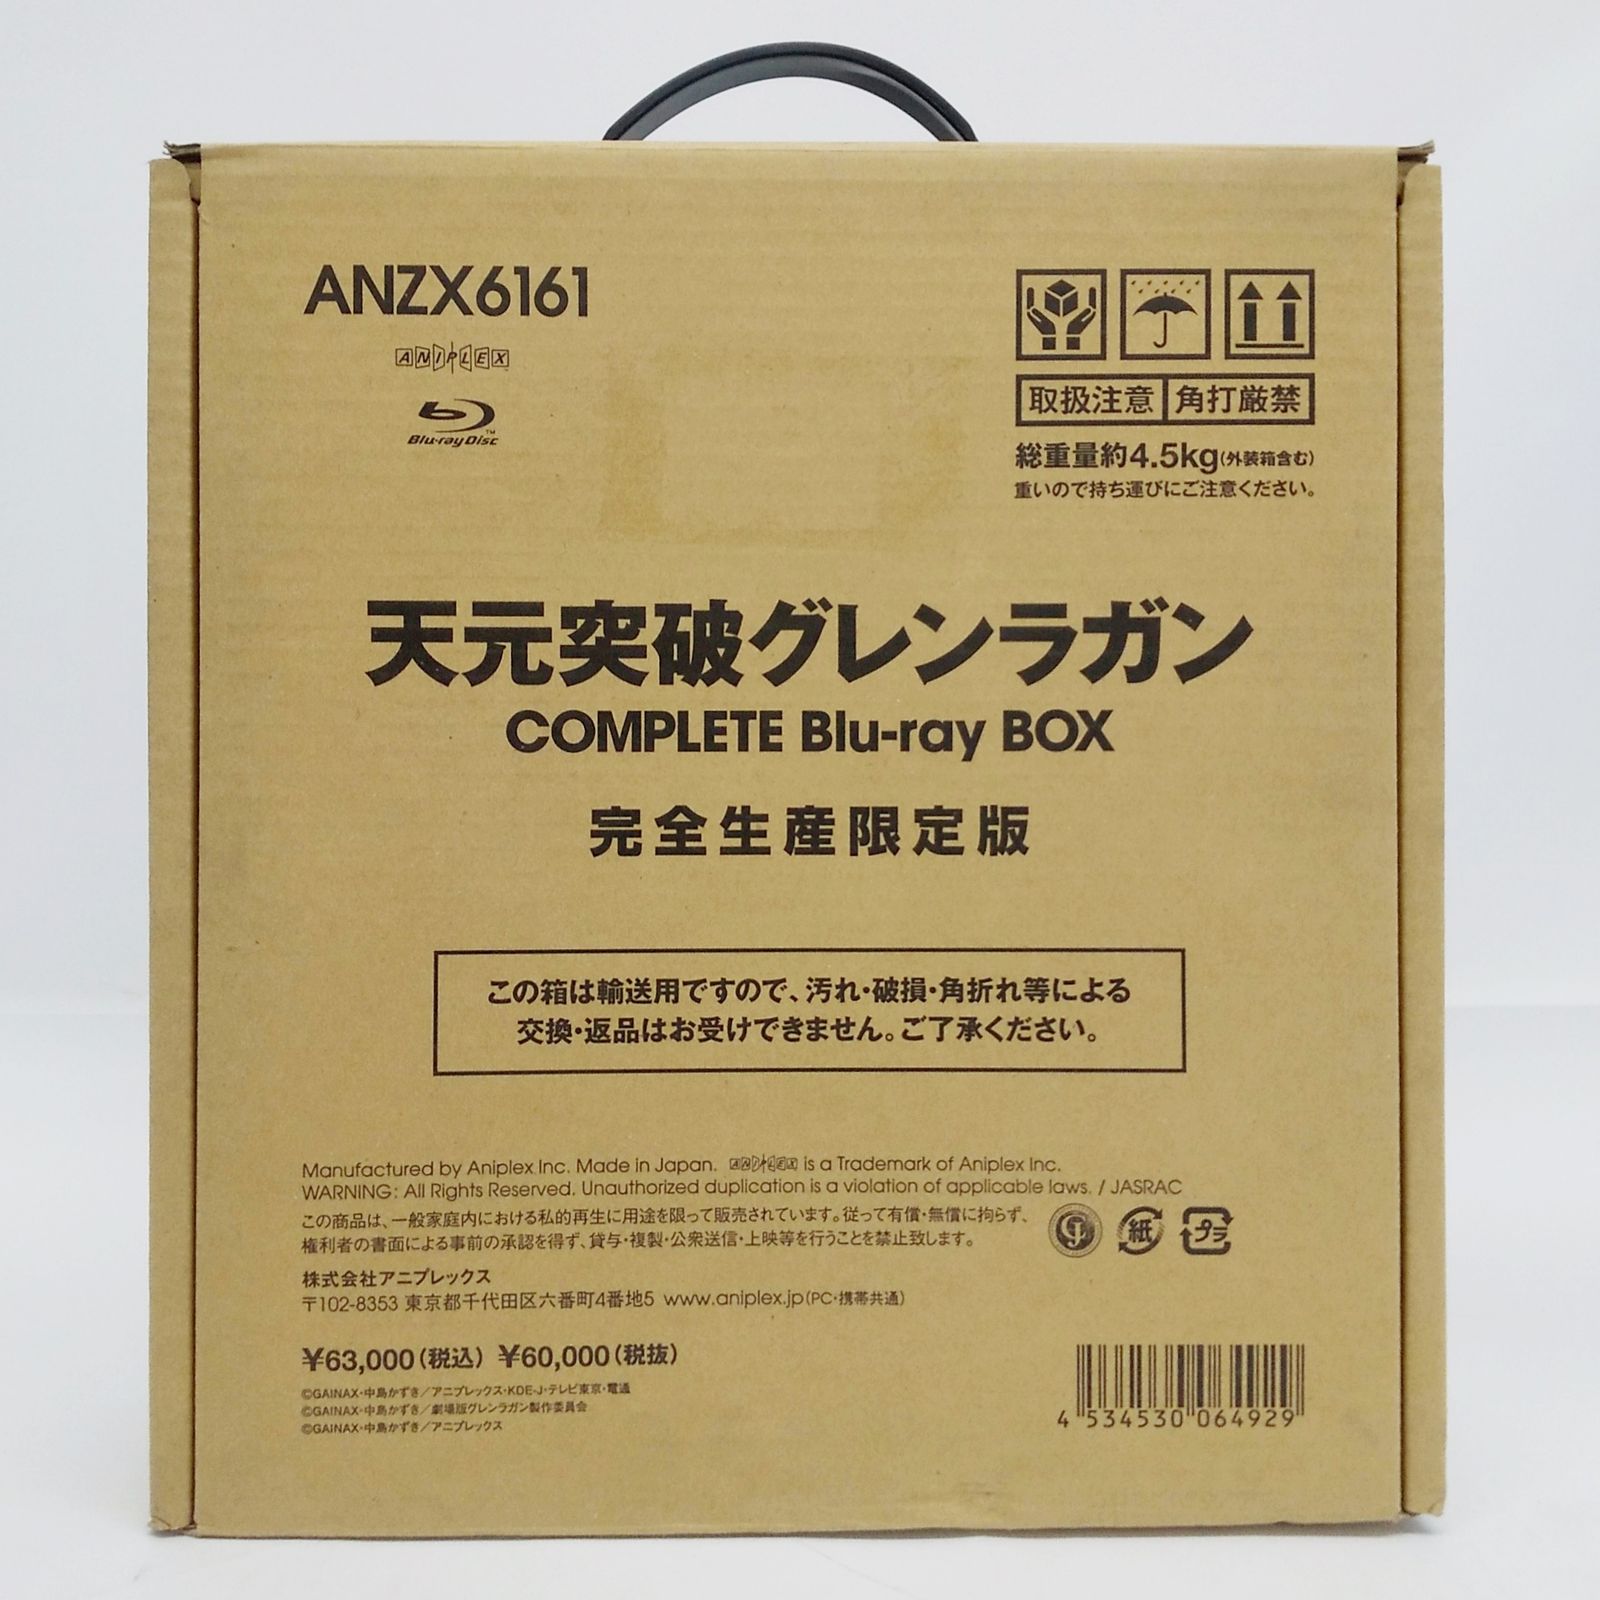 天元突破グレンラガン COMPLETE Blu-ray BOX 完全生産限定版 ANZX6161